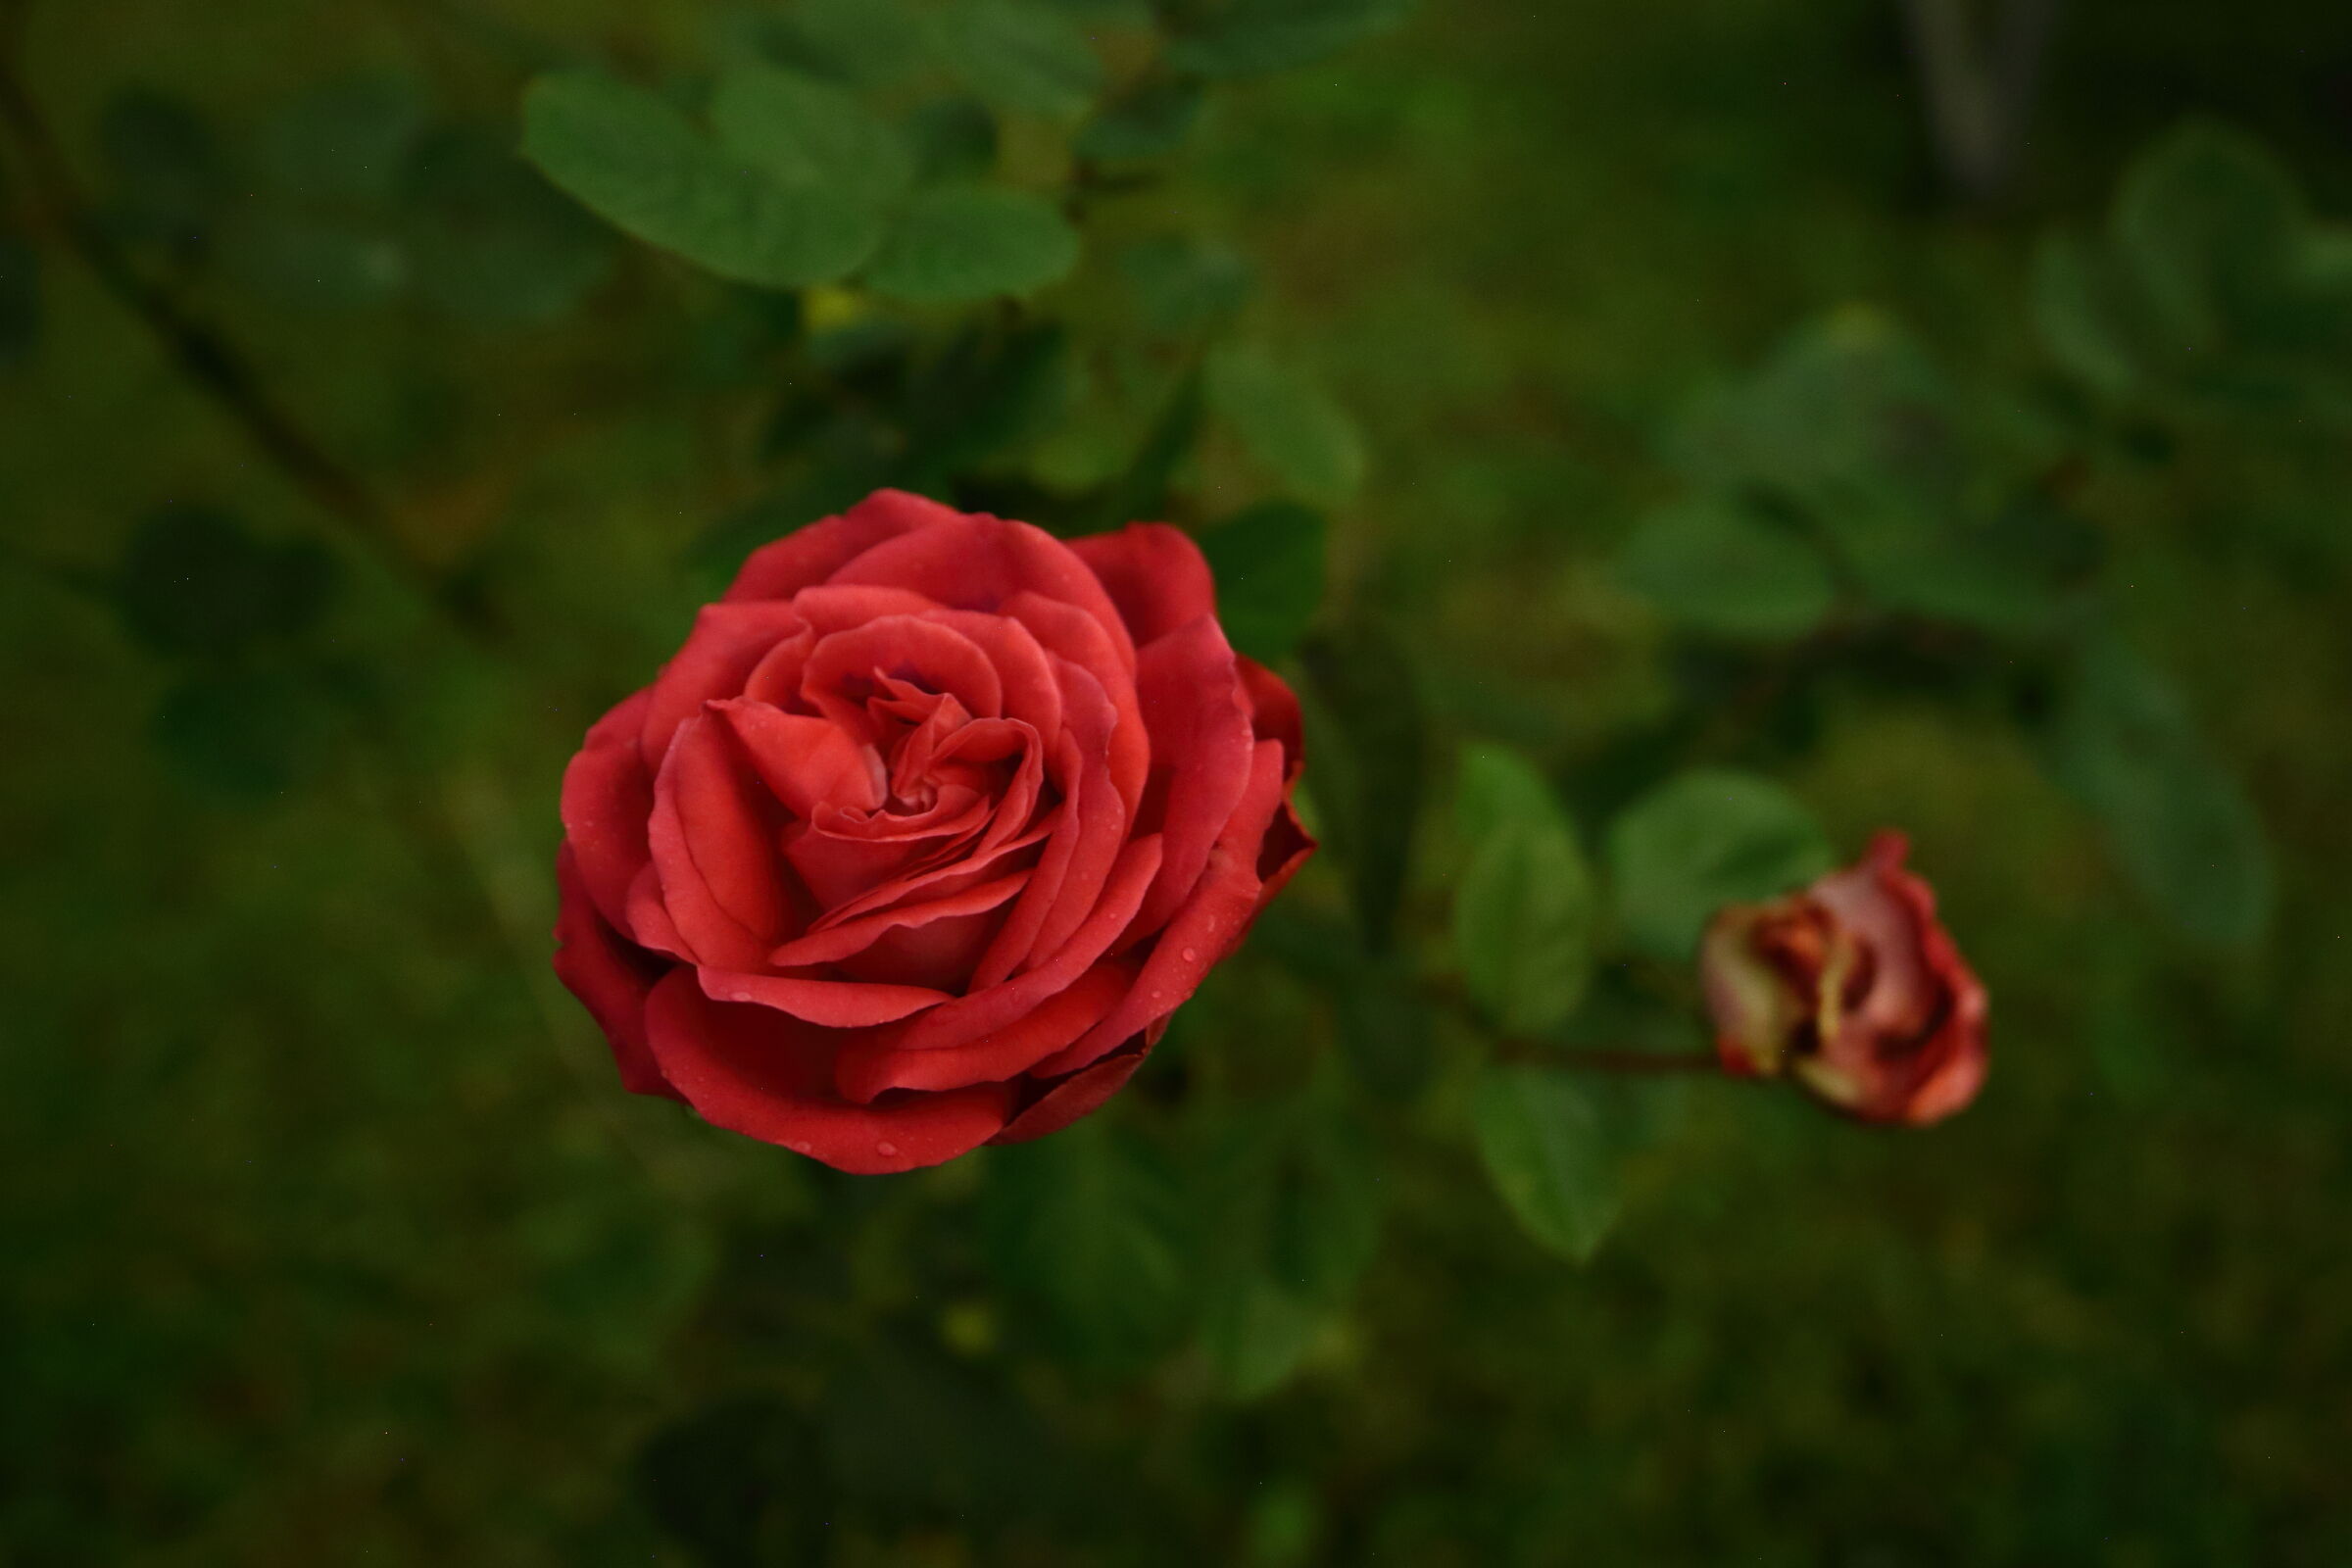 Una rosa rossa illuminata dalla luce della luna...